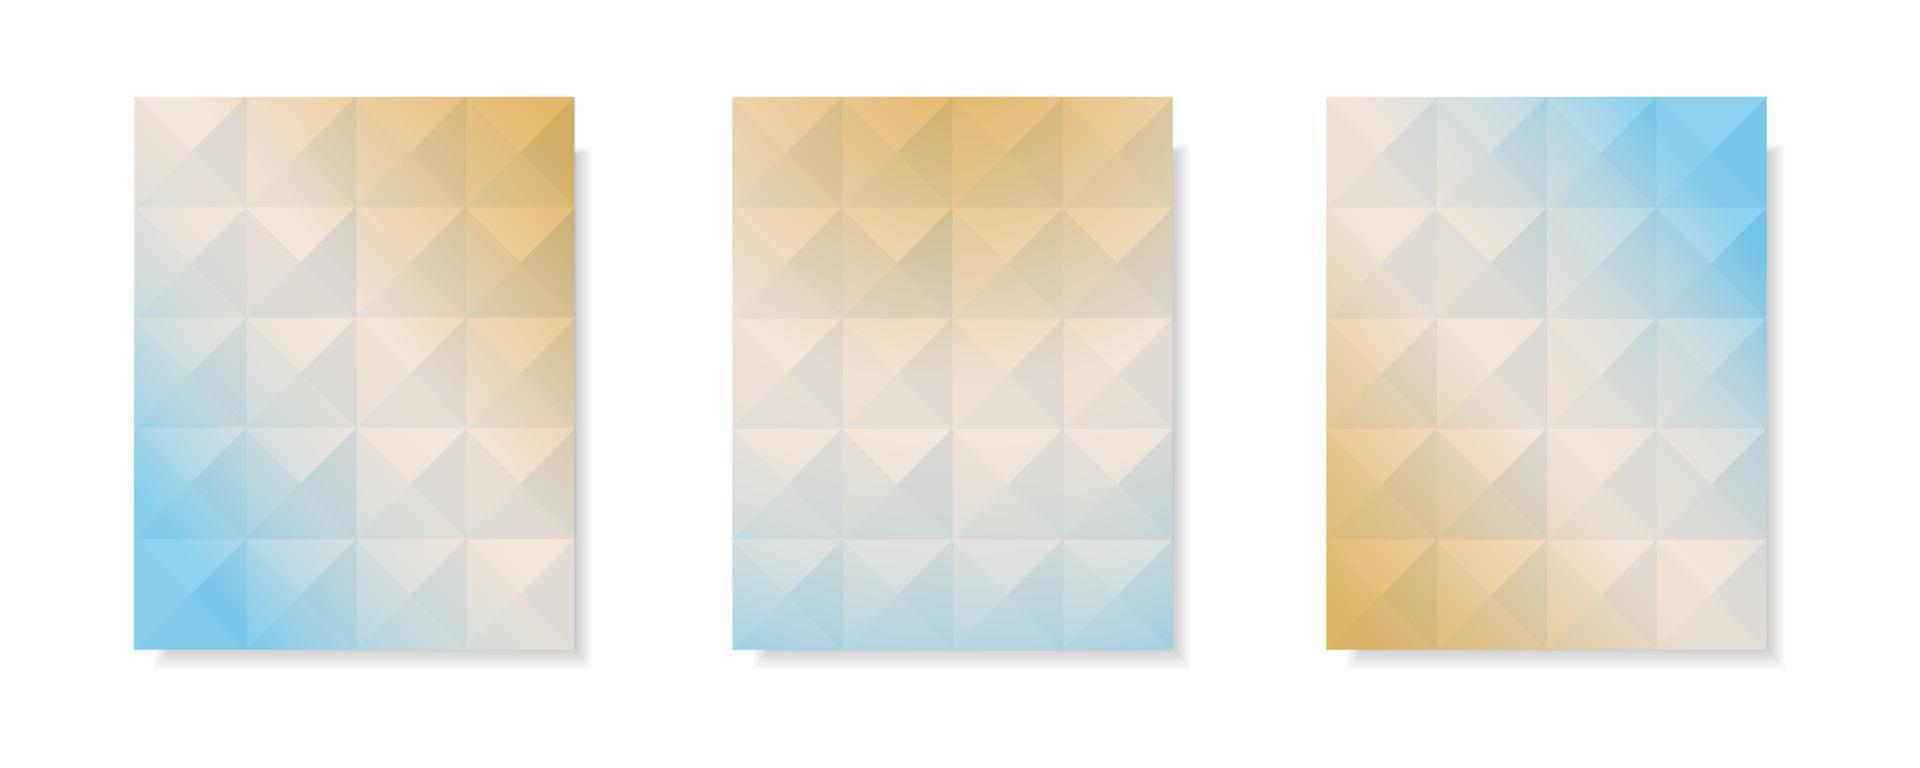 conjunto de fondos abstractos de portada de vector degradado multicolor. diseño de patrón de triángulo con estilo de forma de cristal para fondo de folleto comercial, póster y diseño gráfico. plantilla de ilustración